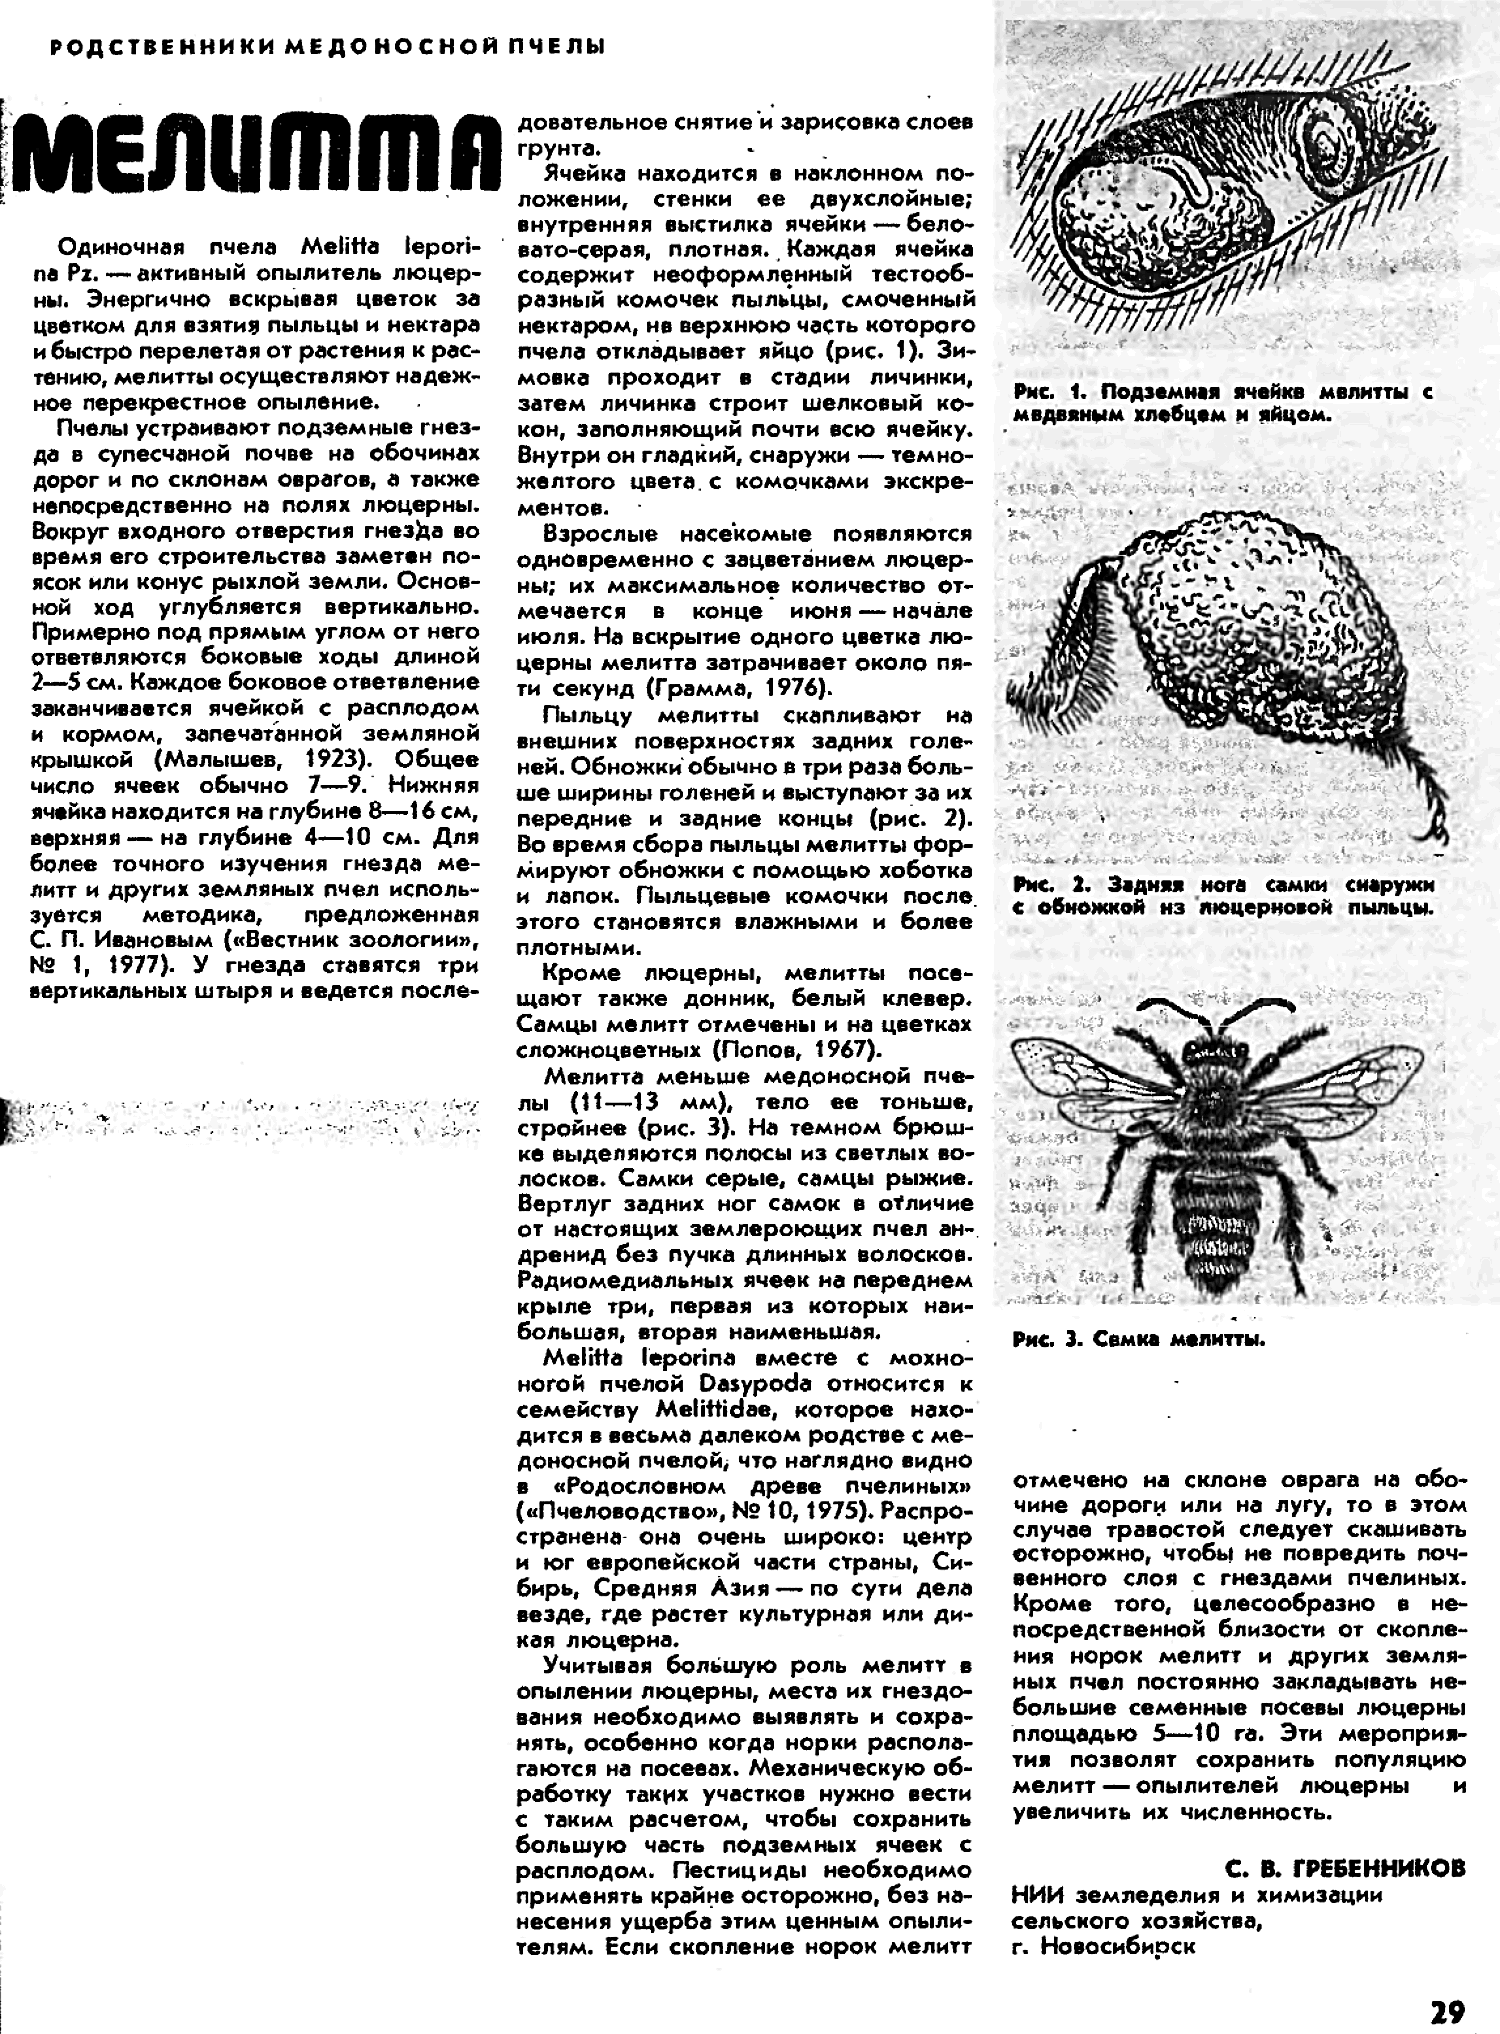 Мелитта. С.В. Гребенников. Пчеловодство, 1982, №3, с.29. Фотокопия